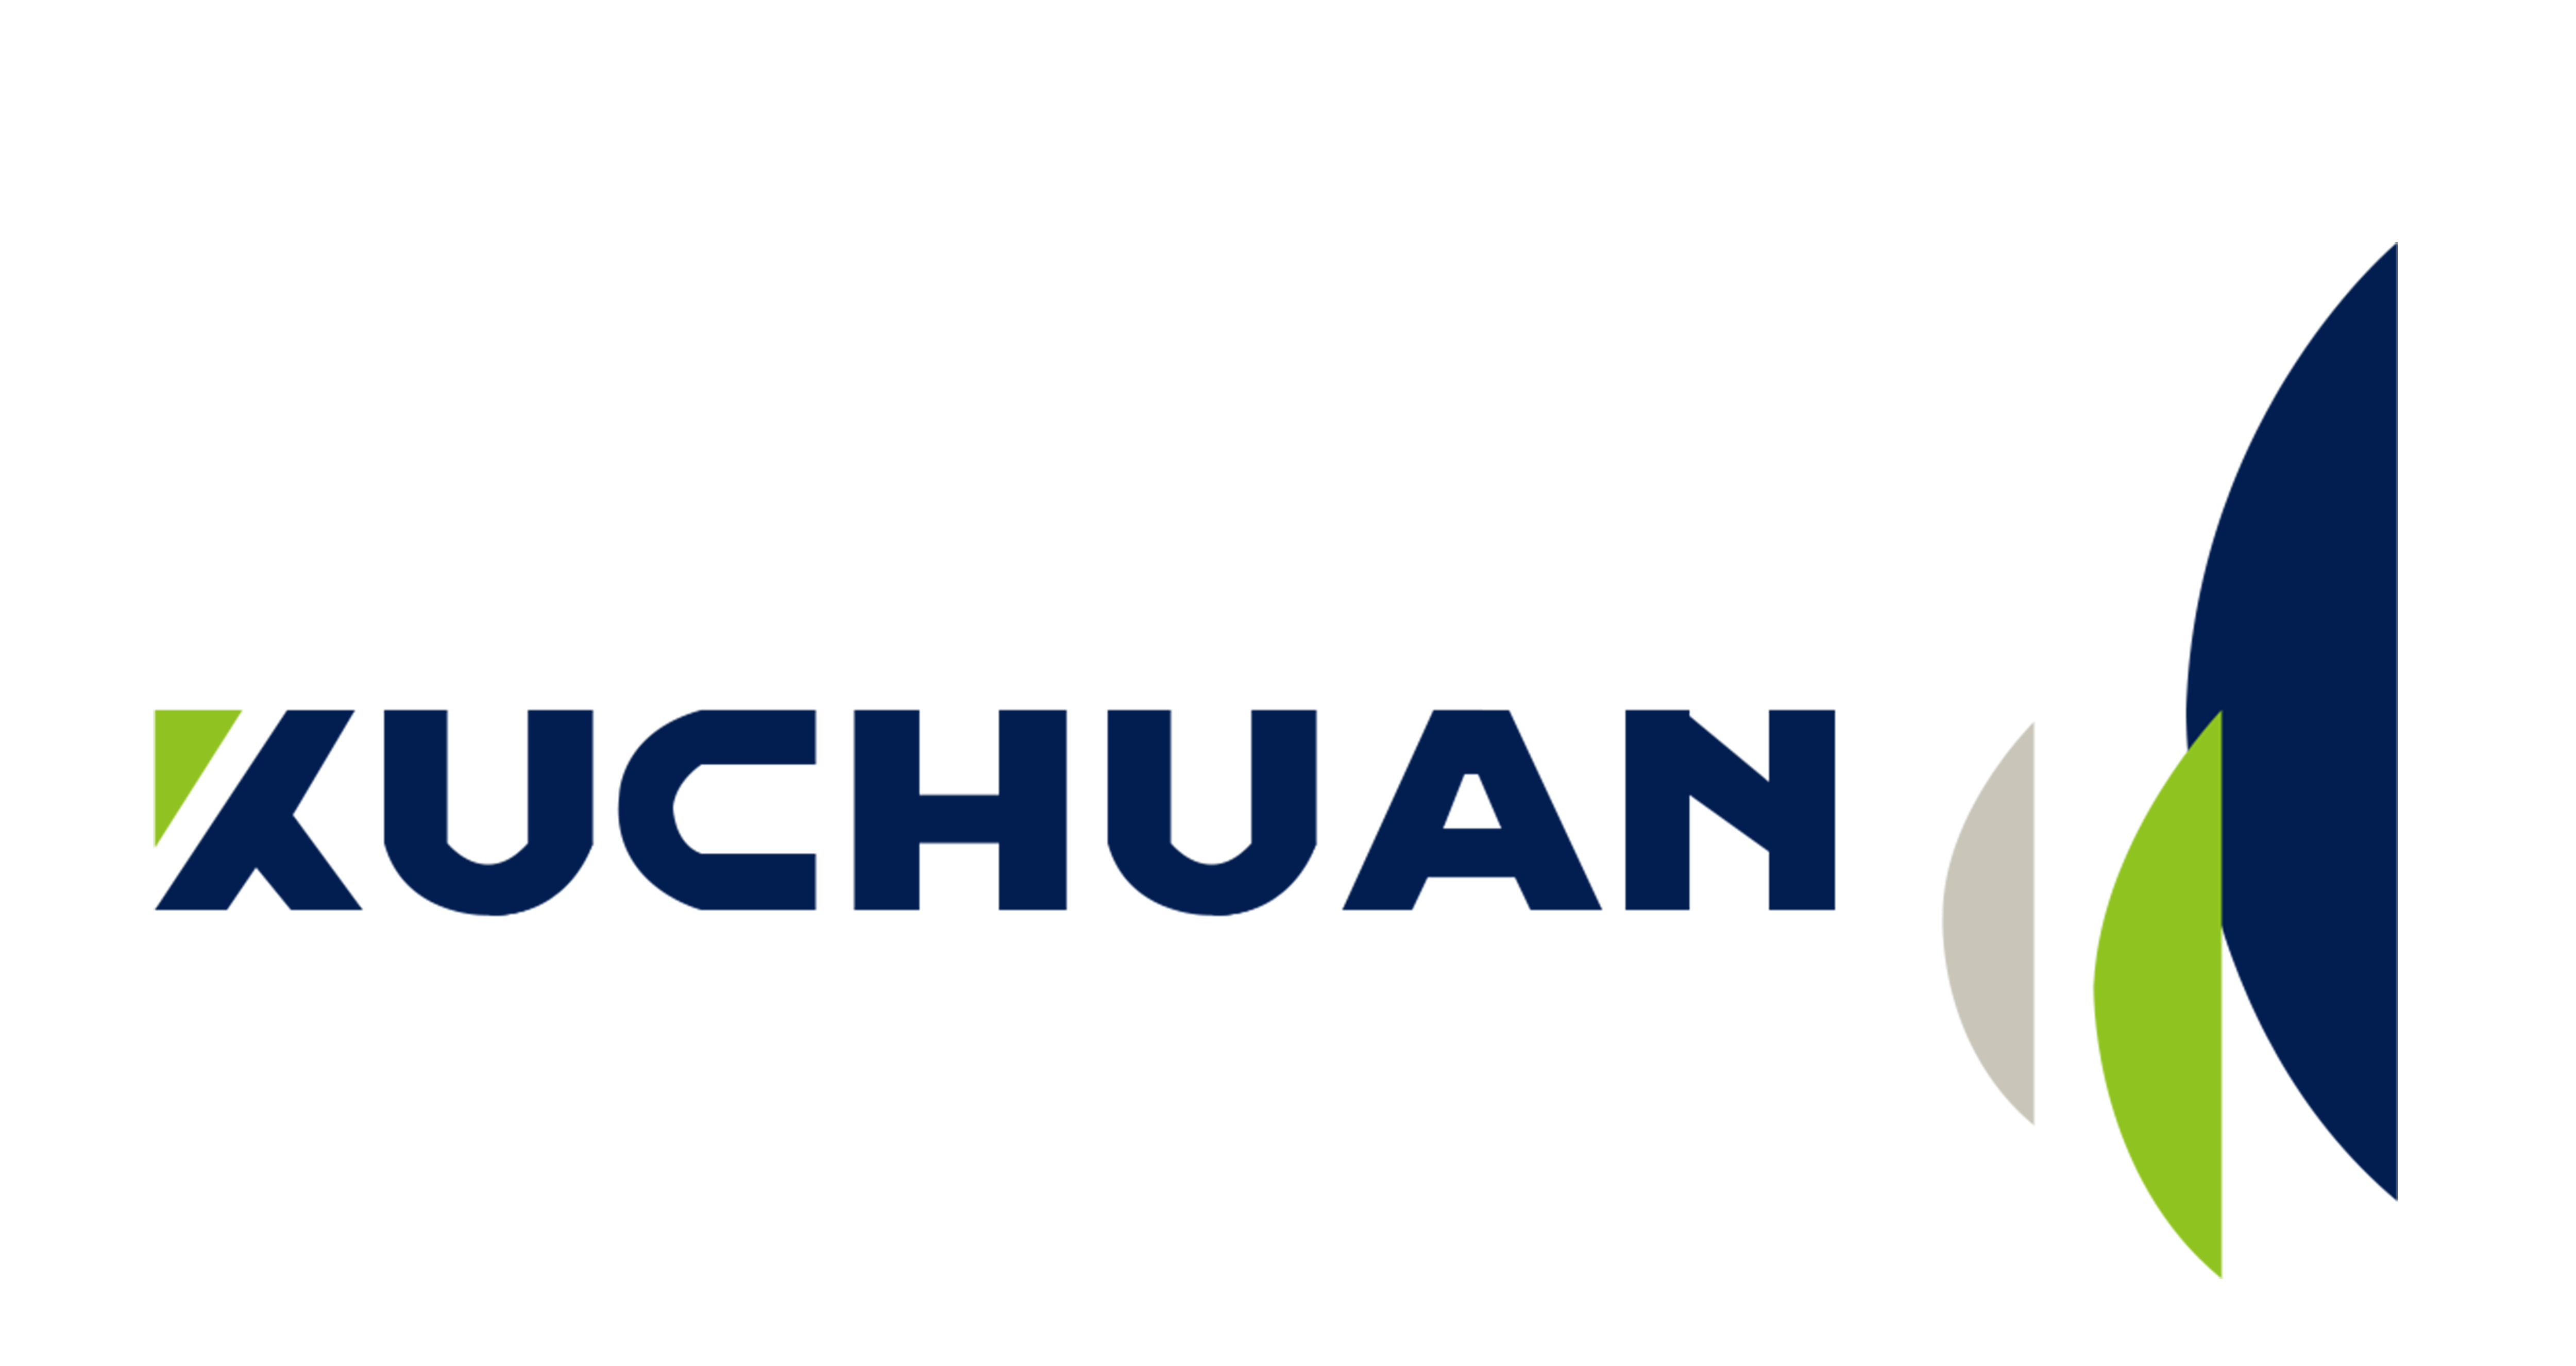 Zhejiang Kuchuan Door Co., Ltd.